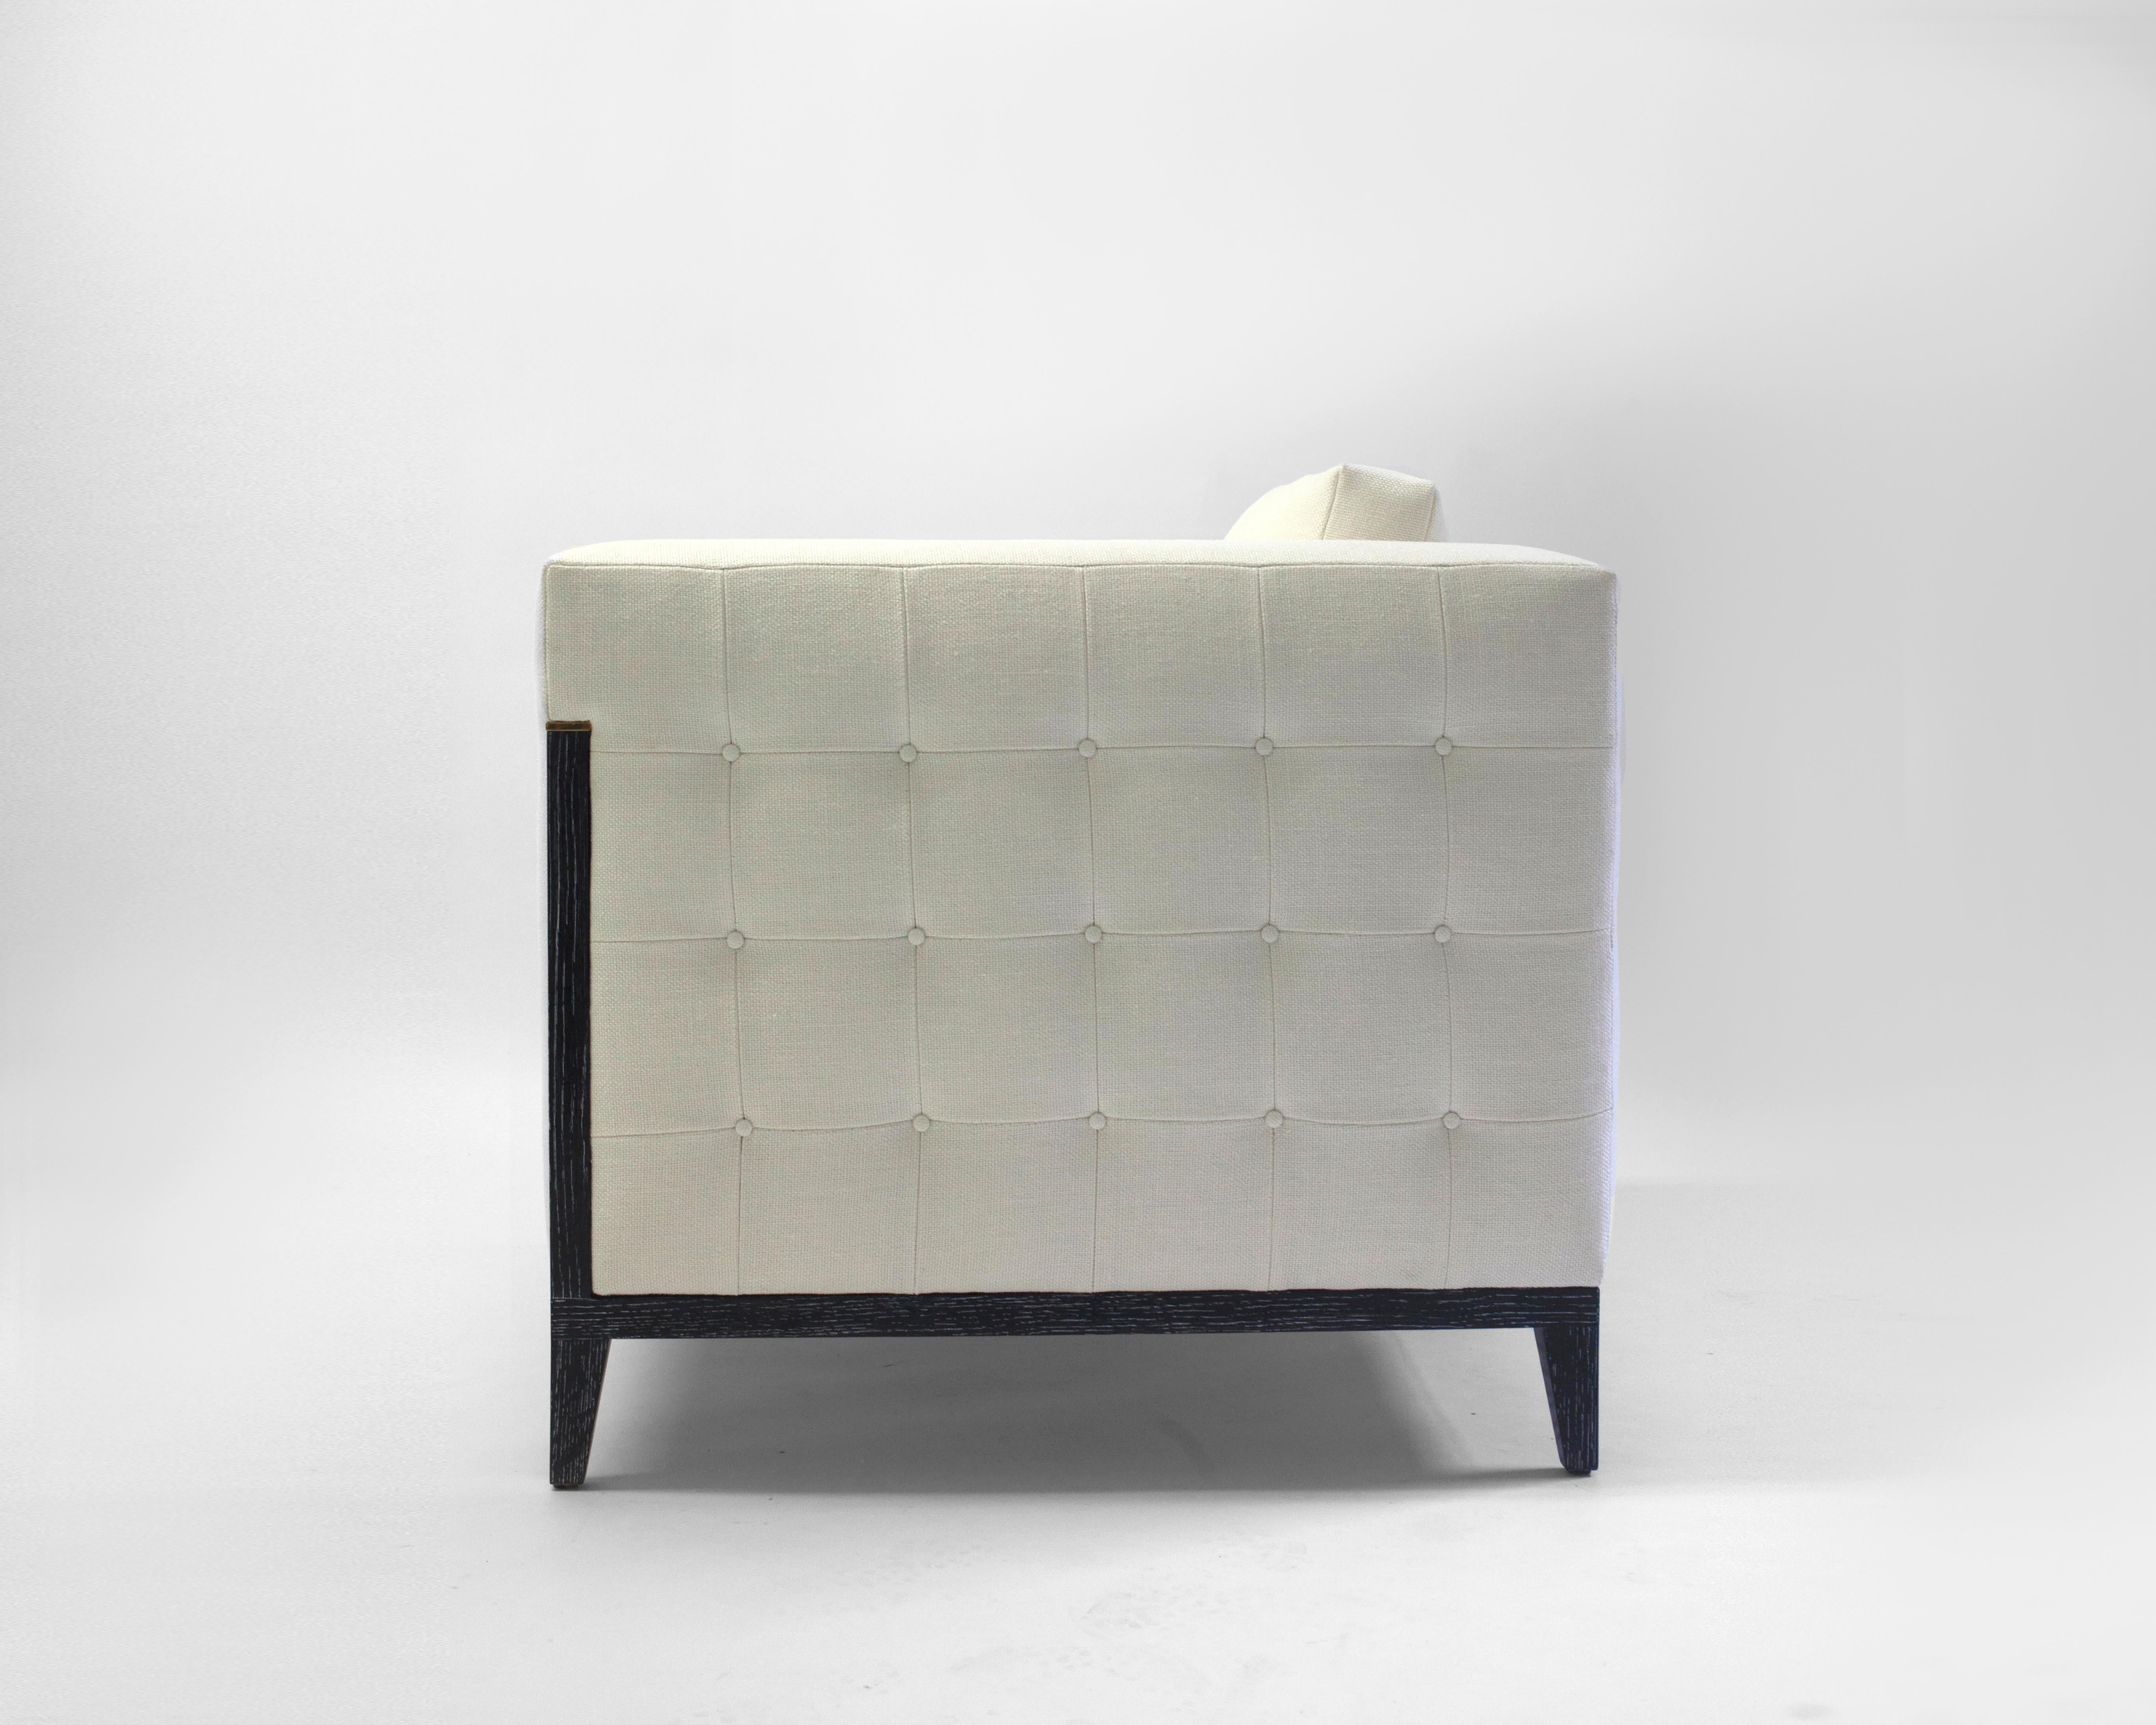 Der Klubsessel Milton von LF Upholstery ist eine schlichte, moderne Variante des alltäglichen quadratischen Sessels, mit losen Rücken- und Sitzkissen mit weicher Schaumstoff-, Feder- und Daunenfüllung, abgebildet mit Holzdetails entlang des Rahmens,